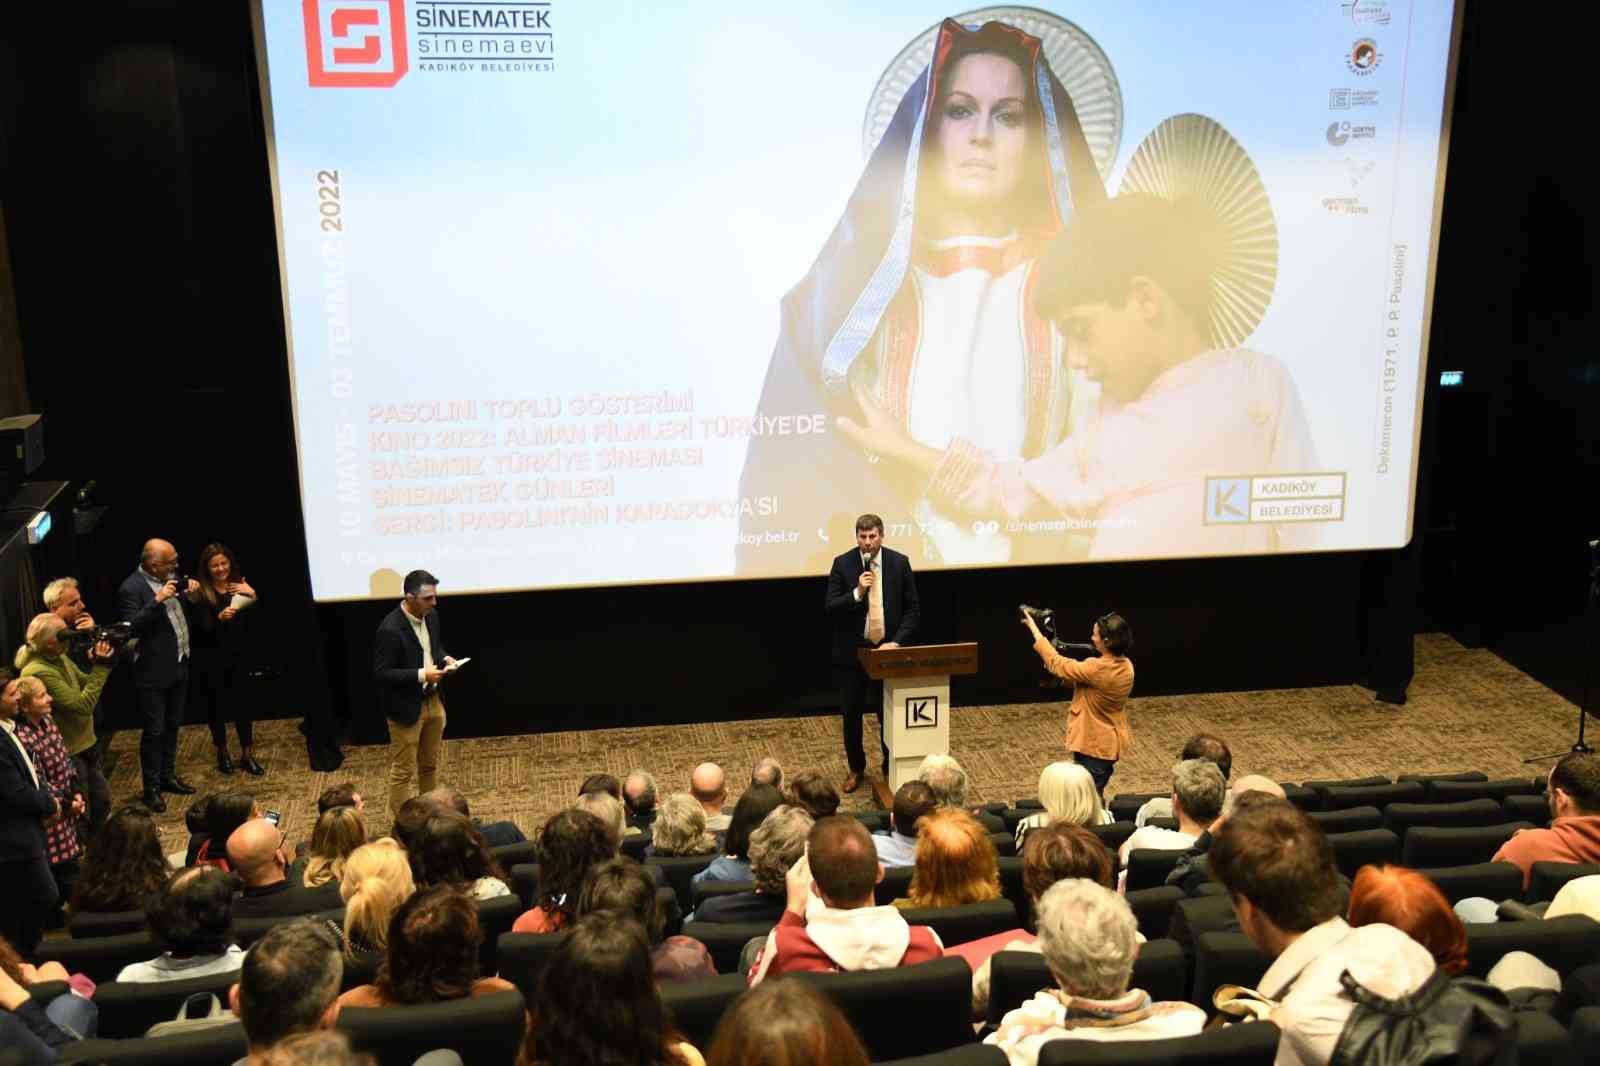 Sinema tarihinin cesur ustası Pier Paolo Pasolini, doğumunun 100’üncü yıldönümünde Kadıköy’de anılıyor. Sinematek/Sinema Evi, toplu film ...